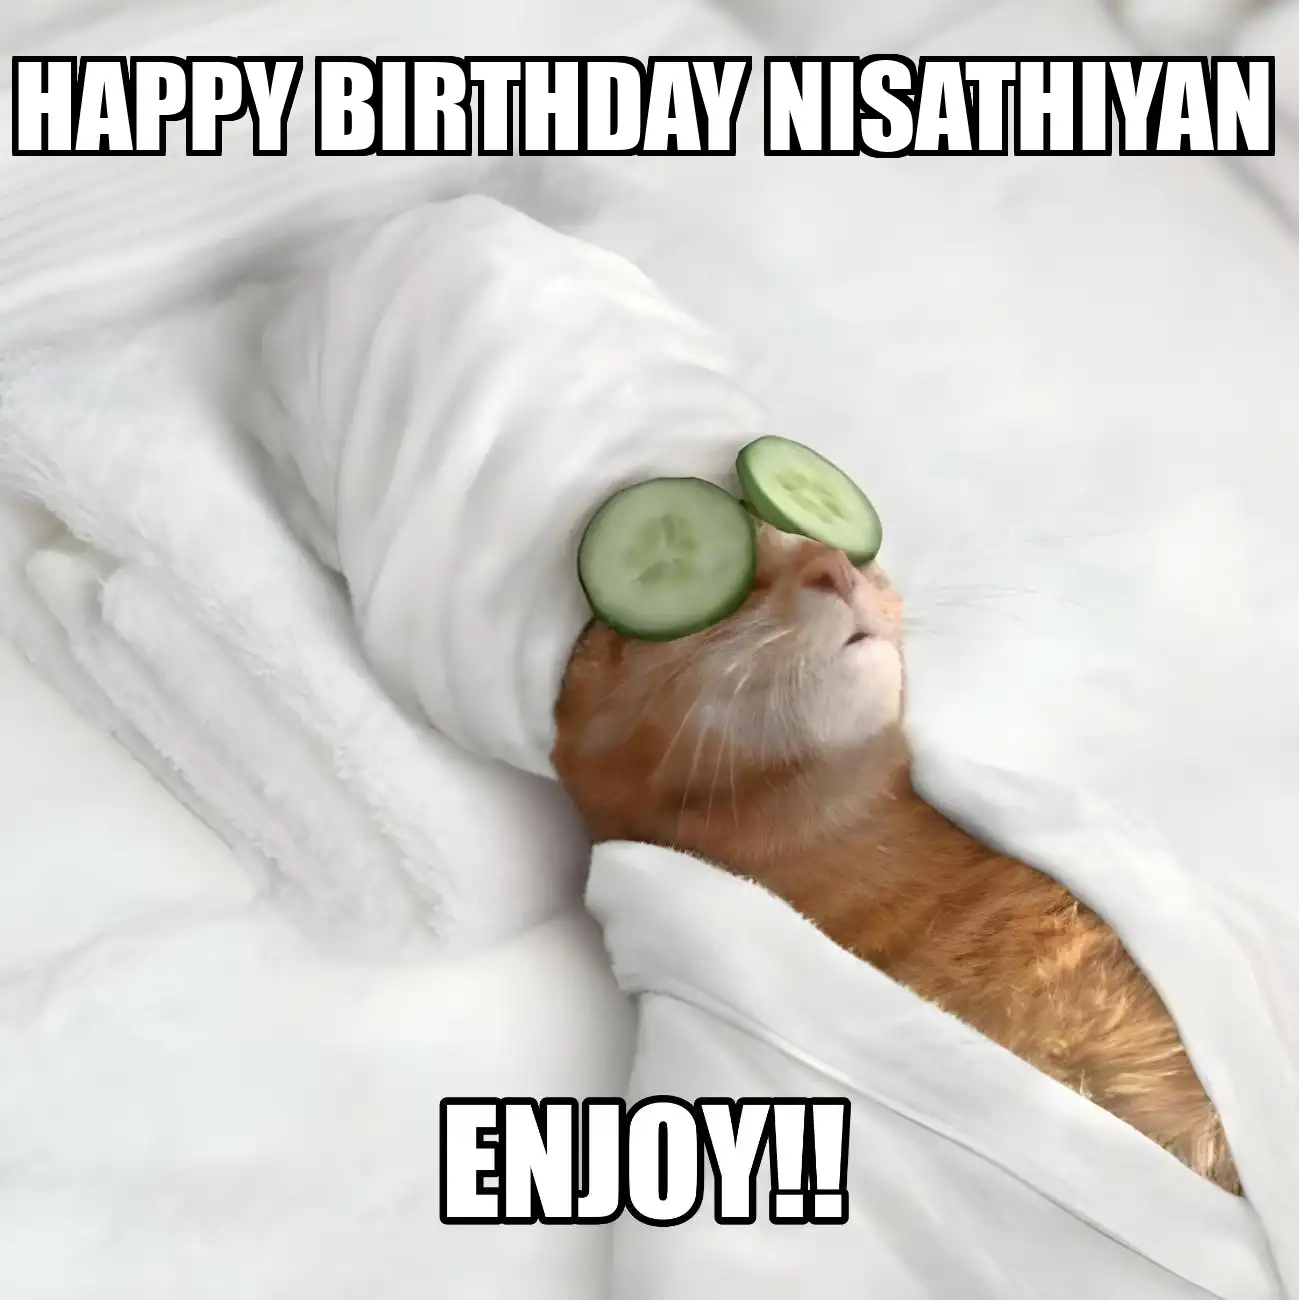 Happy Birthday Nisathiyan Enjoy Cat Meme